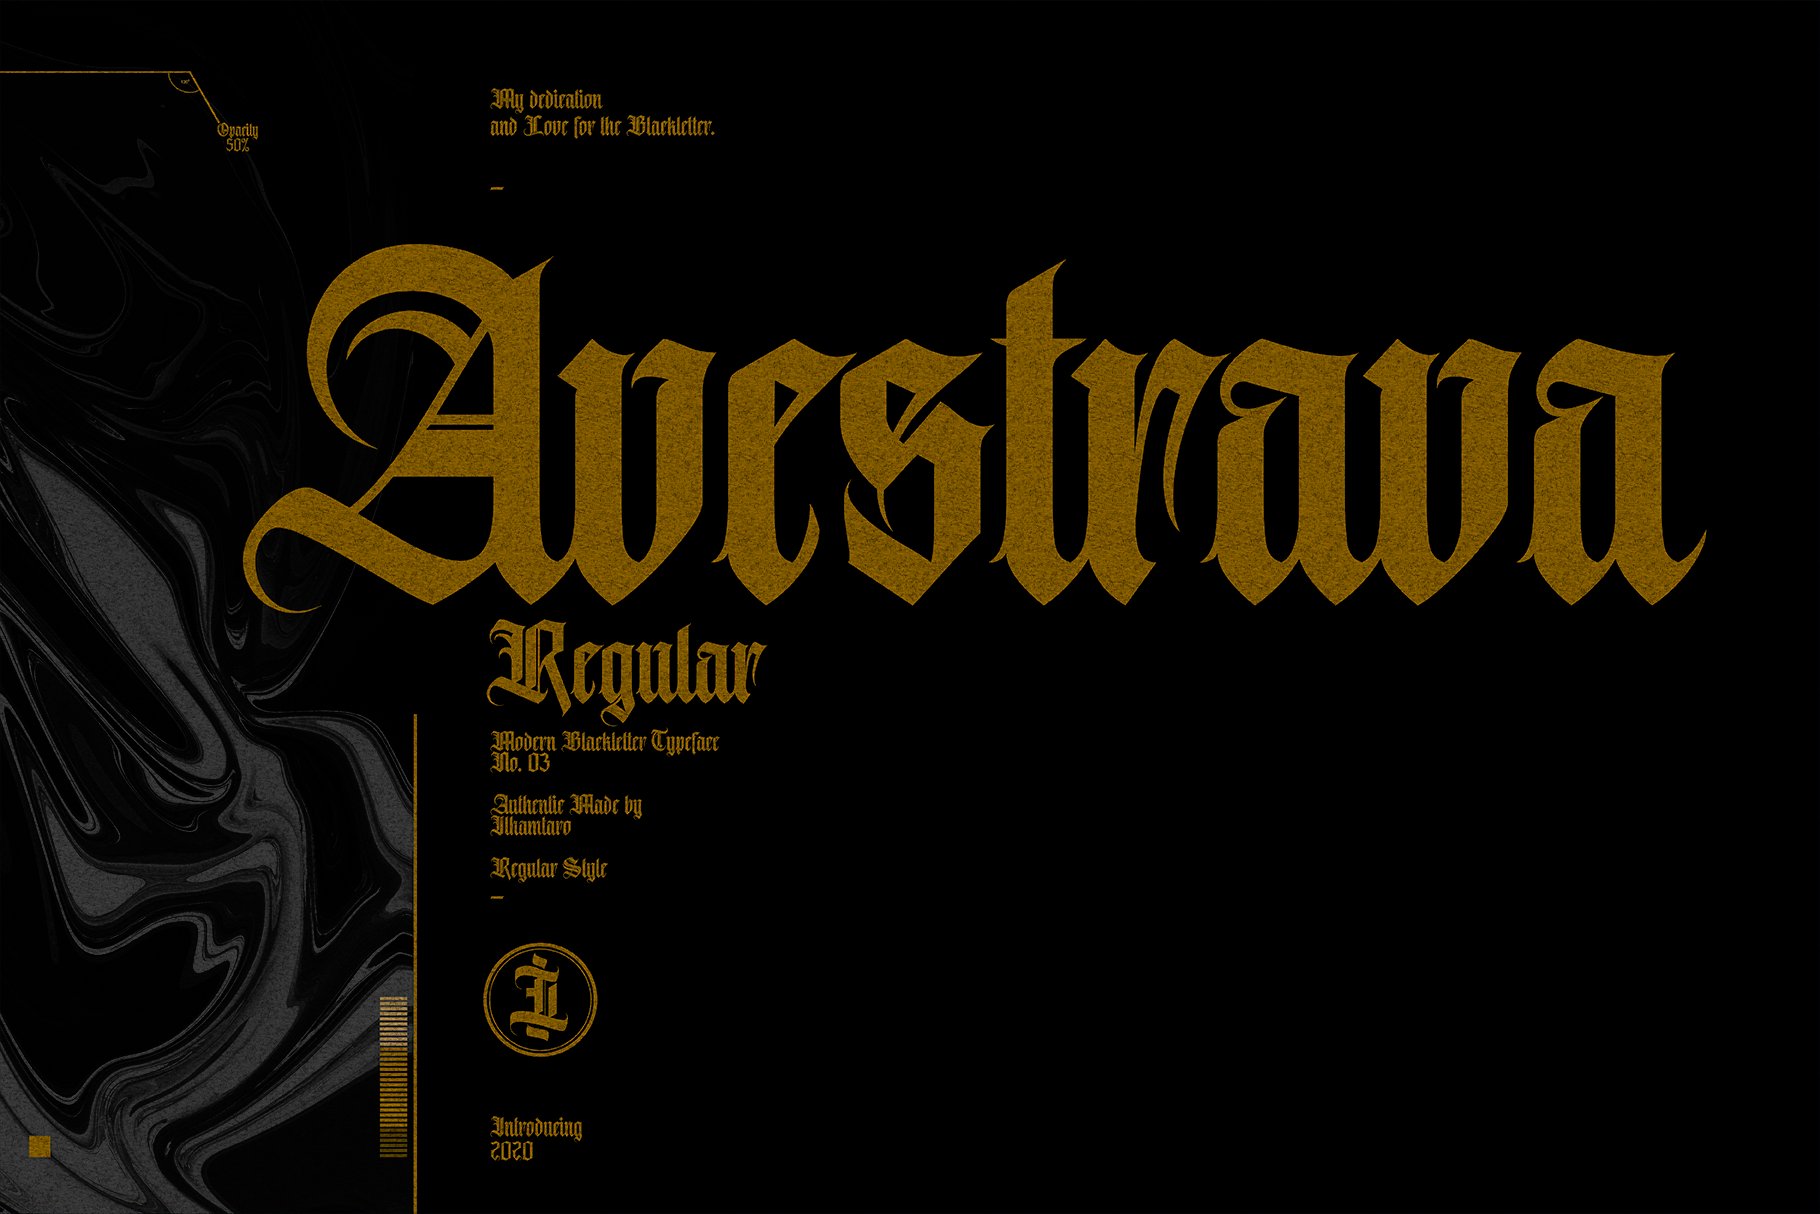 Avestrava Regular cover image.